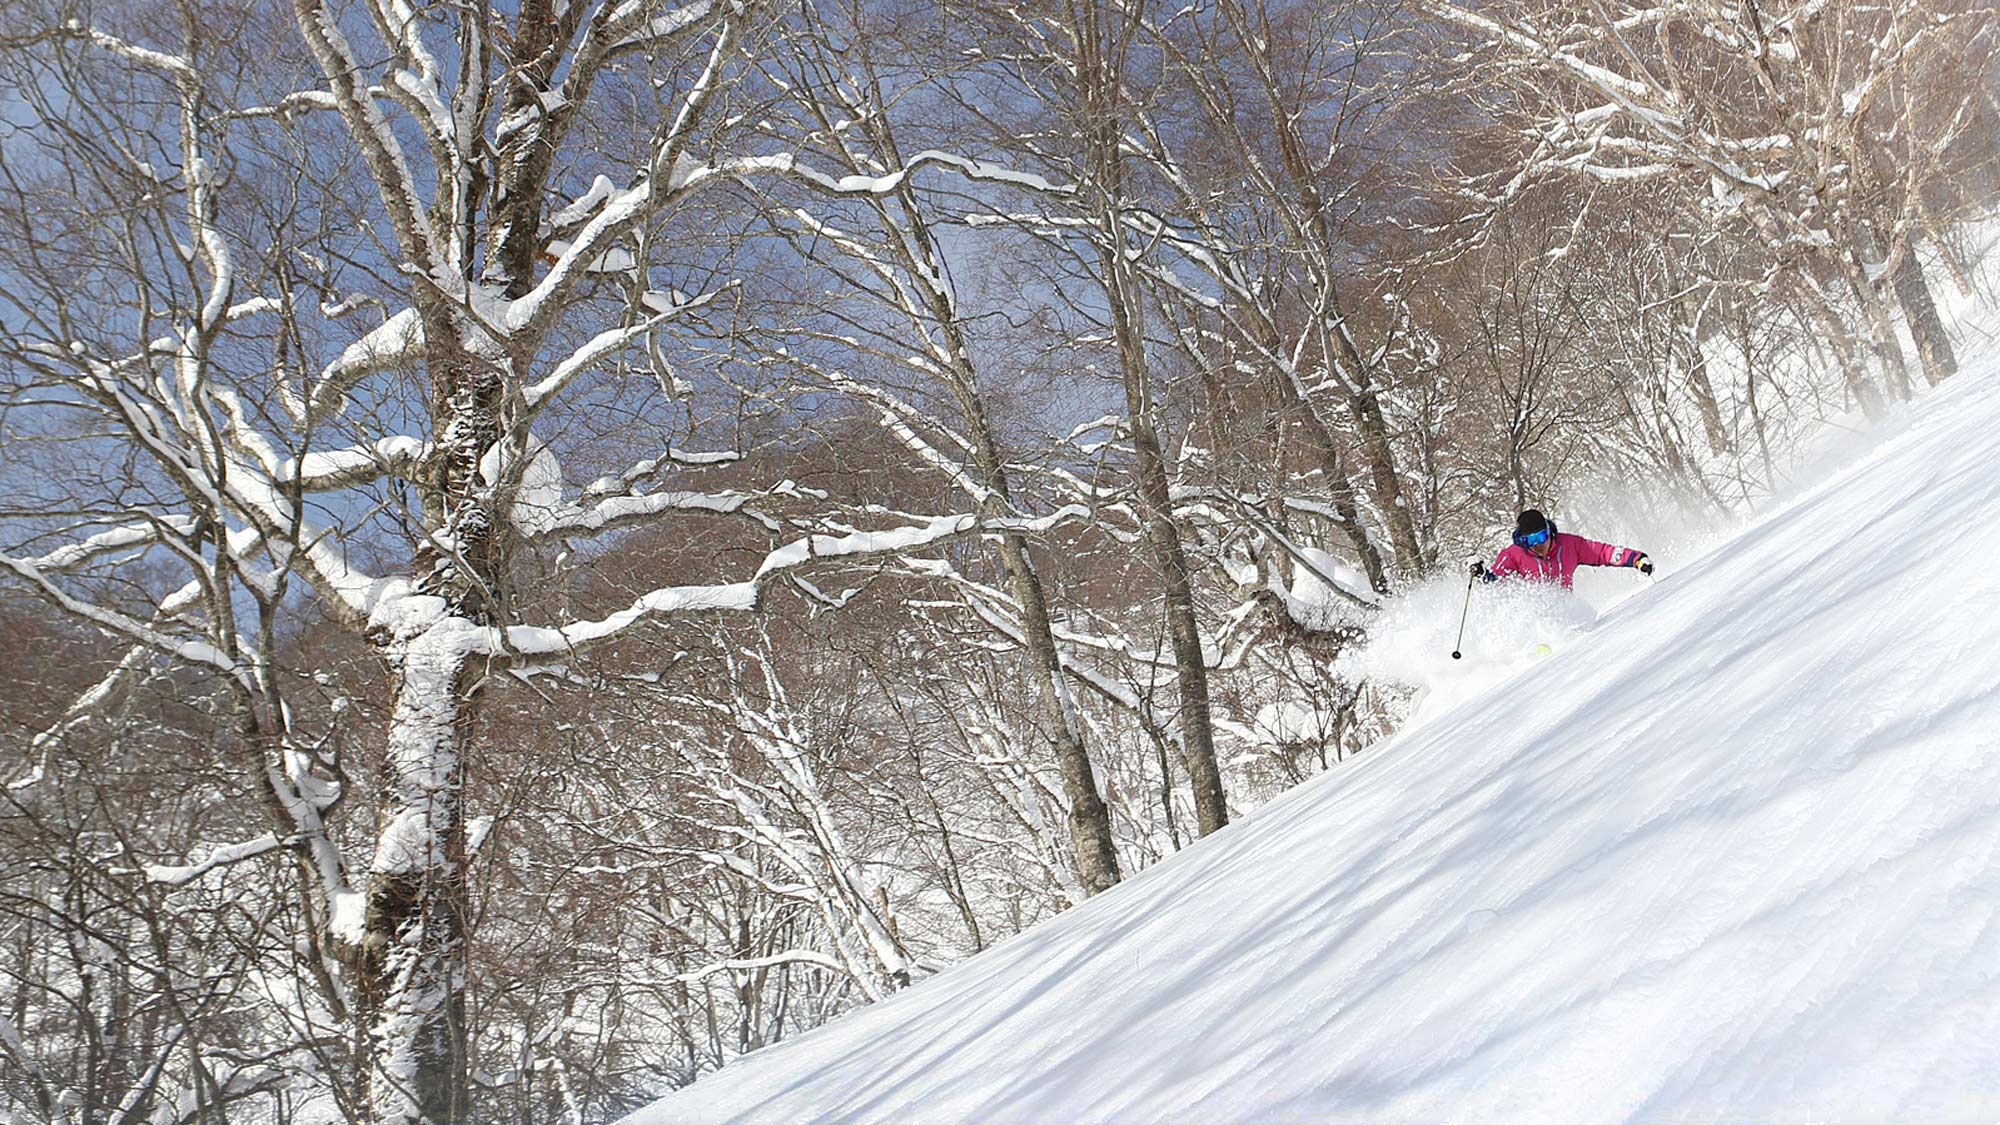 【下倉スキー場】たっぷりのパウダーをまき上げて進むダイナミックな滑り。